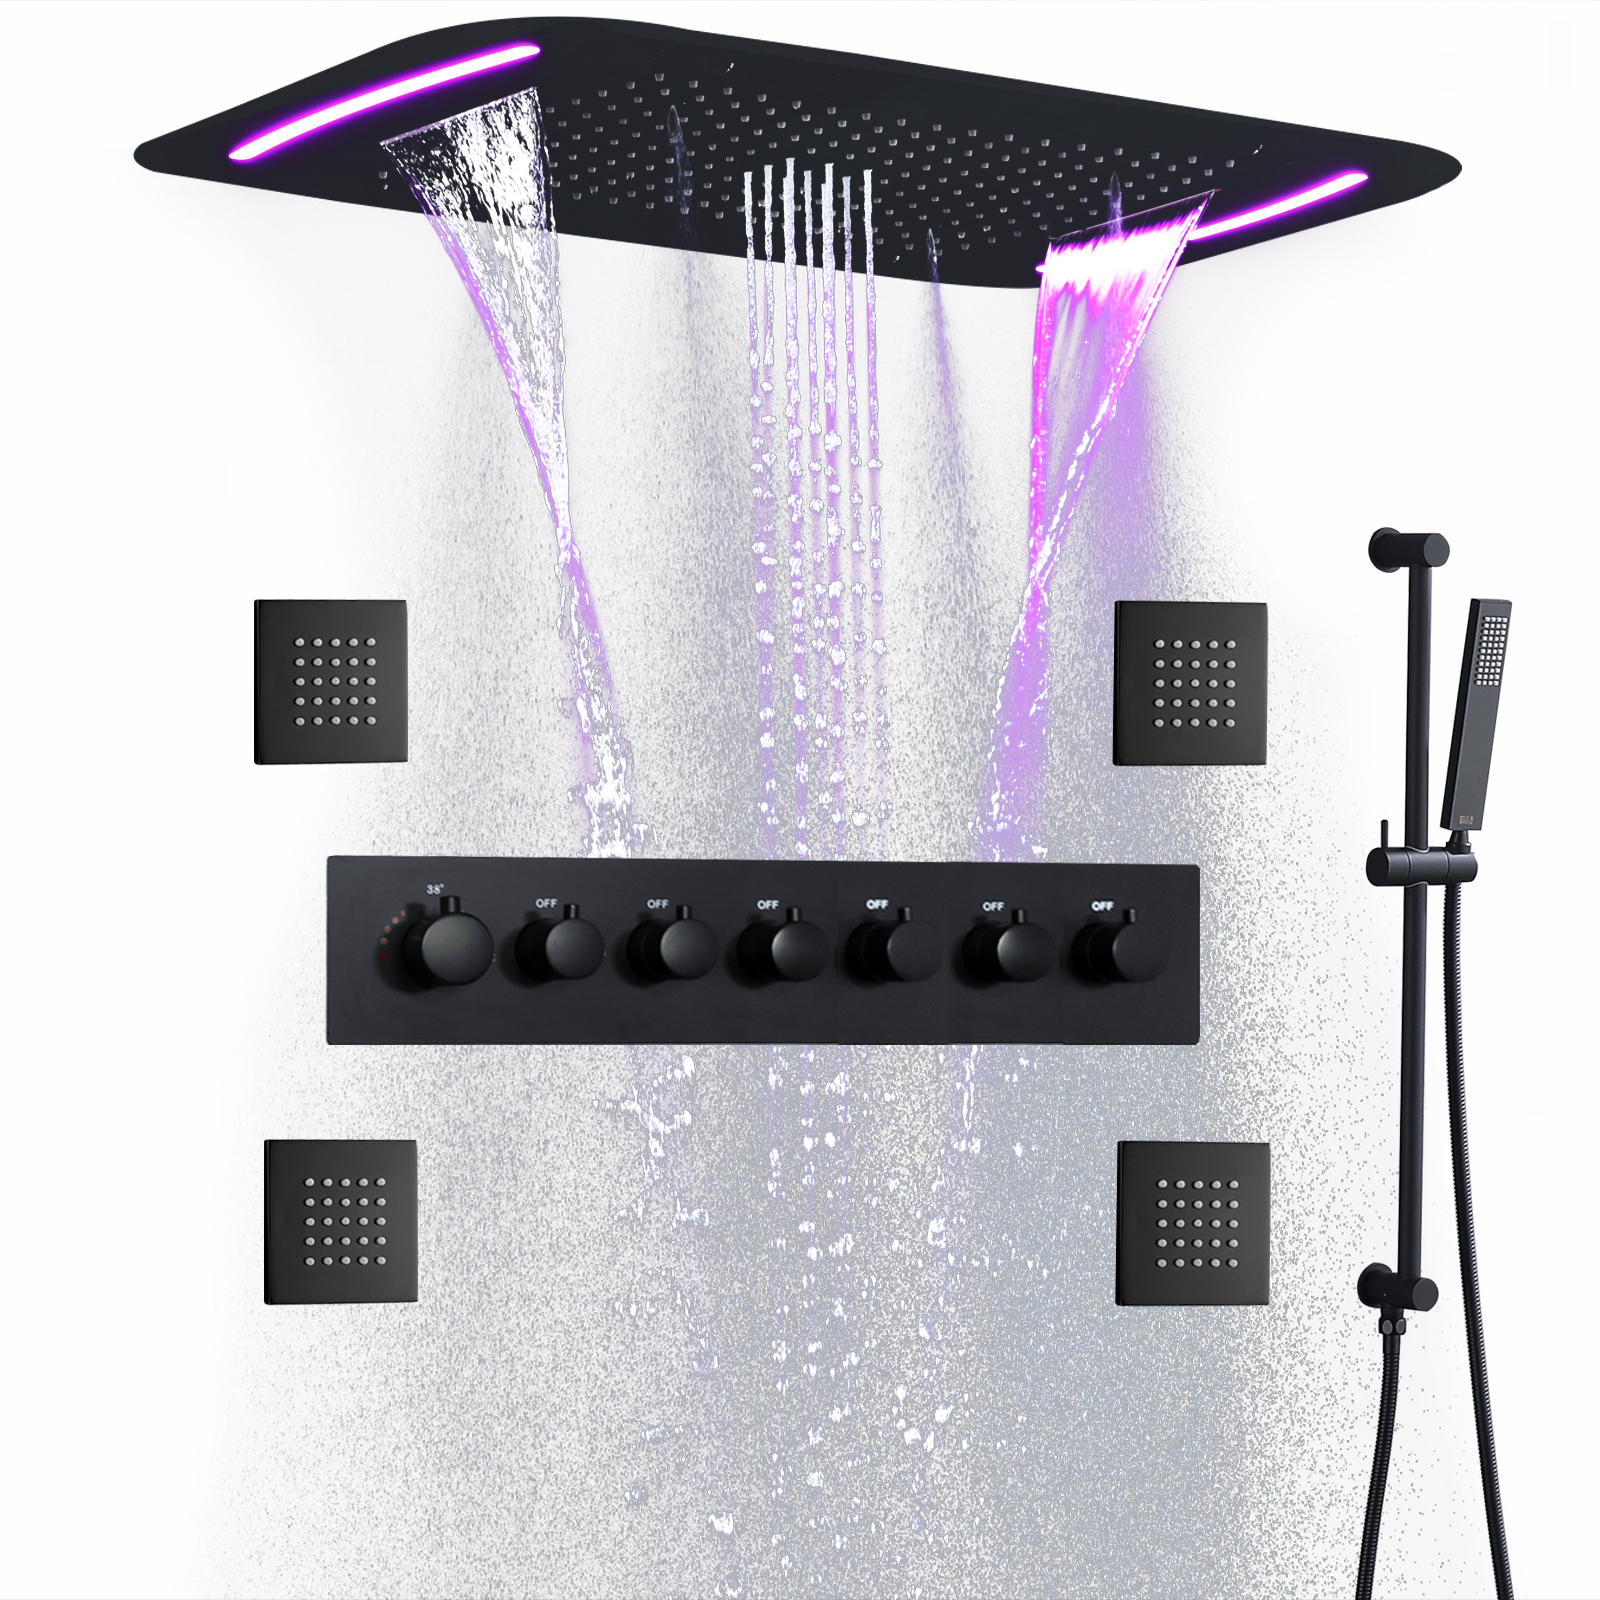 مجموعة نظام دش أسود غير لامع ترموستاتي مقاس 28 × 17 بوصة رأس دش مطري كبير لشلال الحمام مع لوحة LED